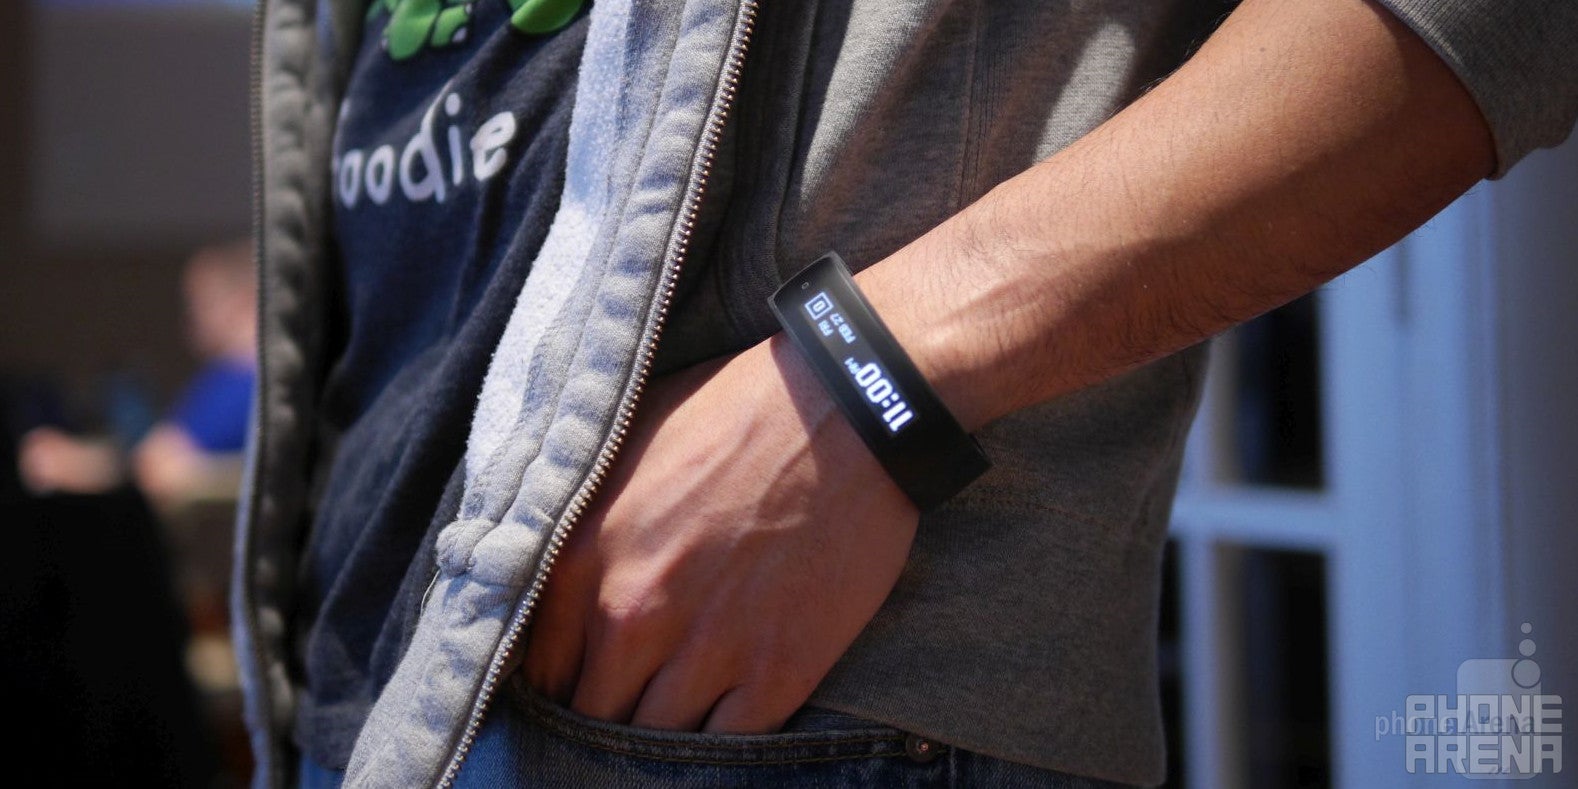 HTC Grip hands-on